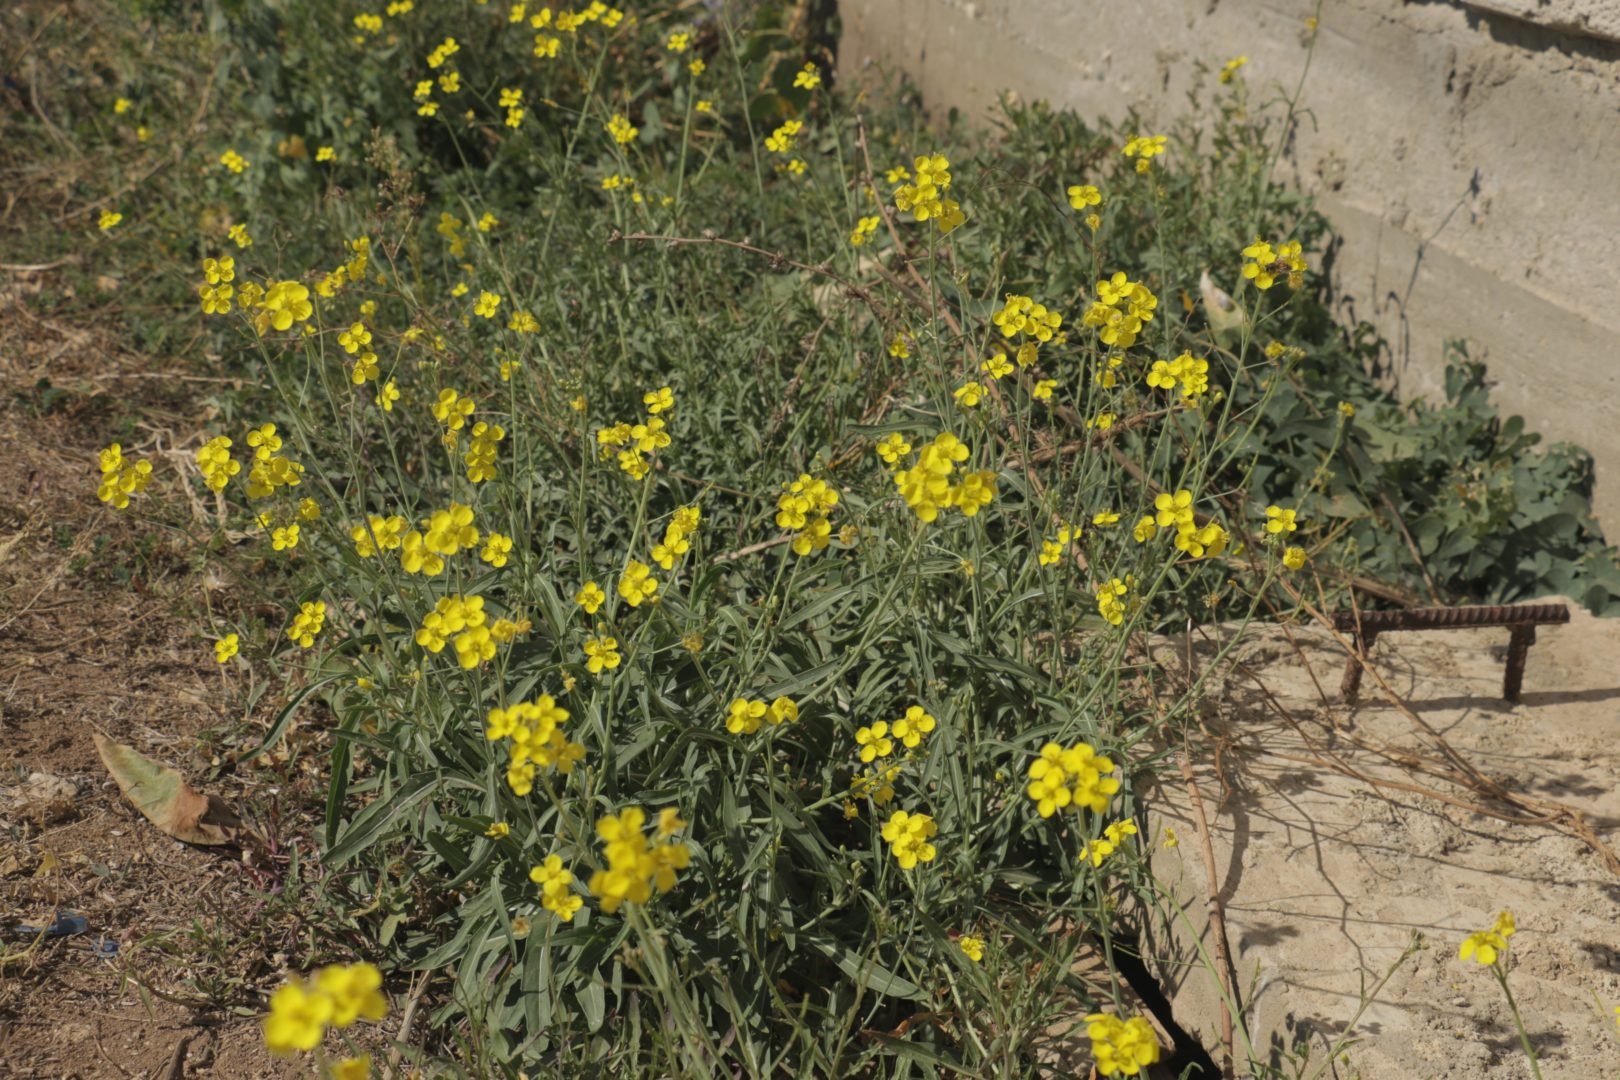 Сорняк у дороги с желтыми цветками - двурядка тонколистная, или руколла многолетняя